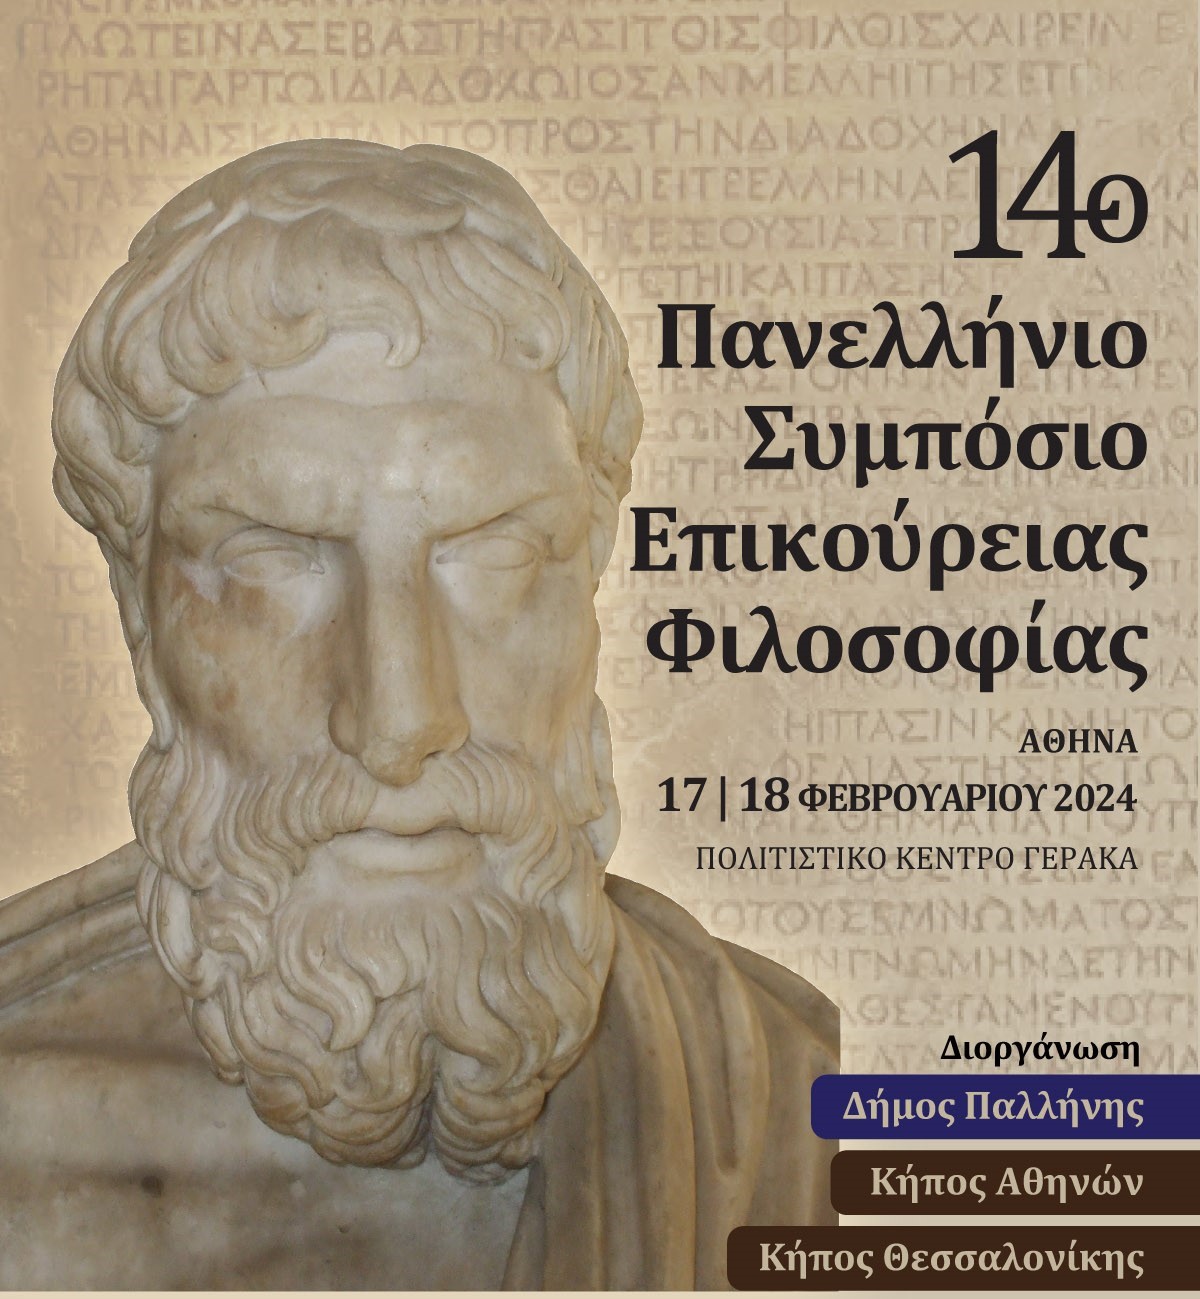 Στο Δήμο Παλλήνης το πανελλήνιο συμπόσιο φιλοσοφίας